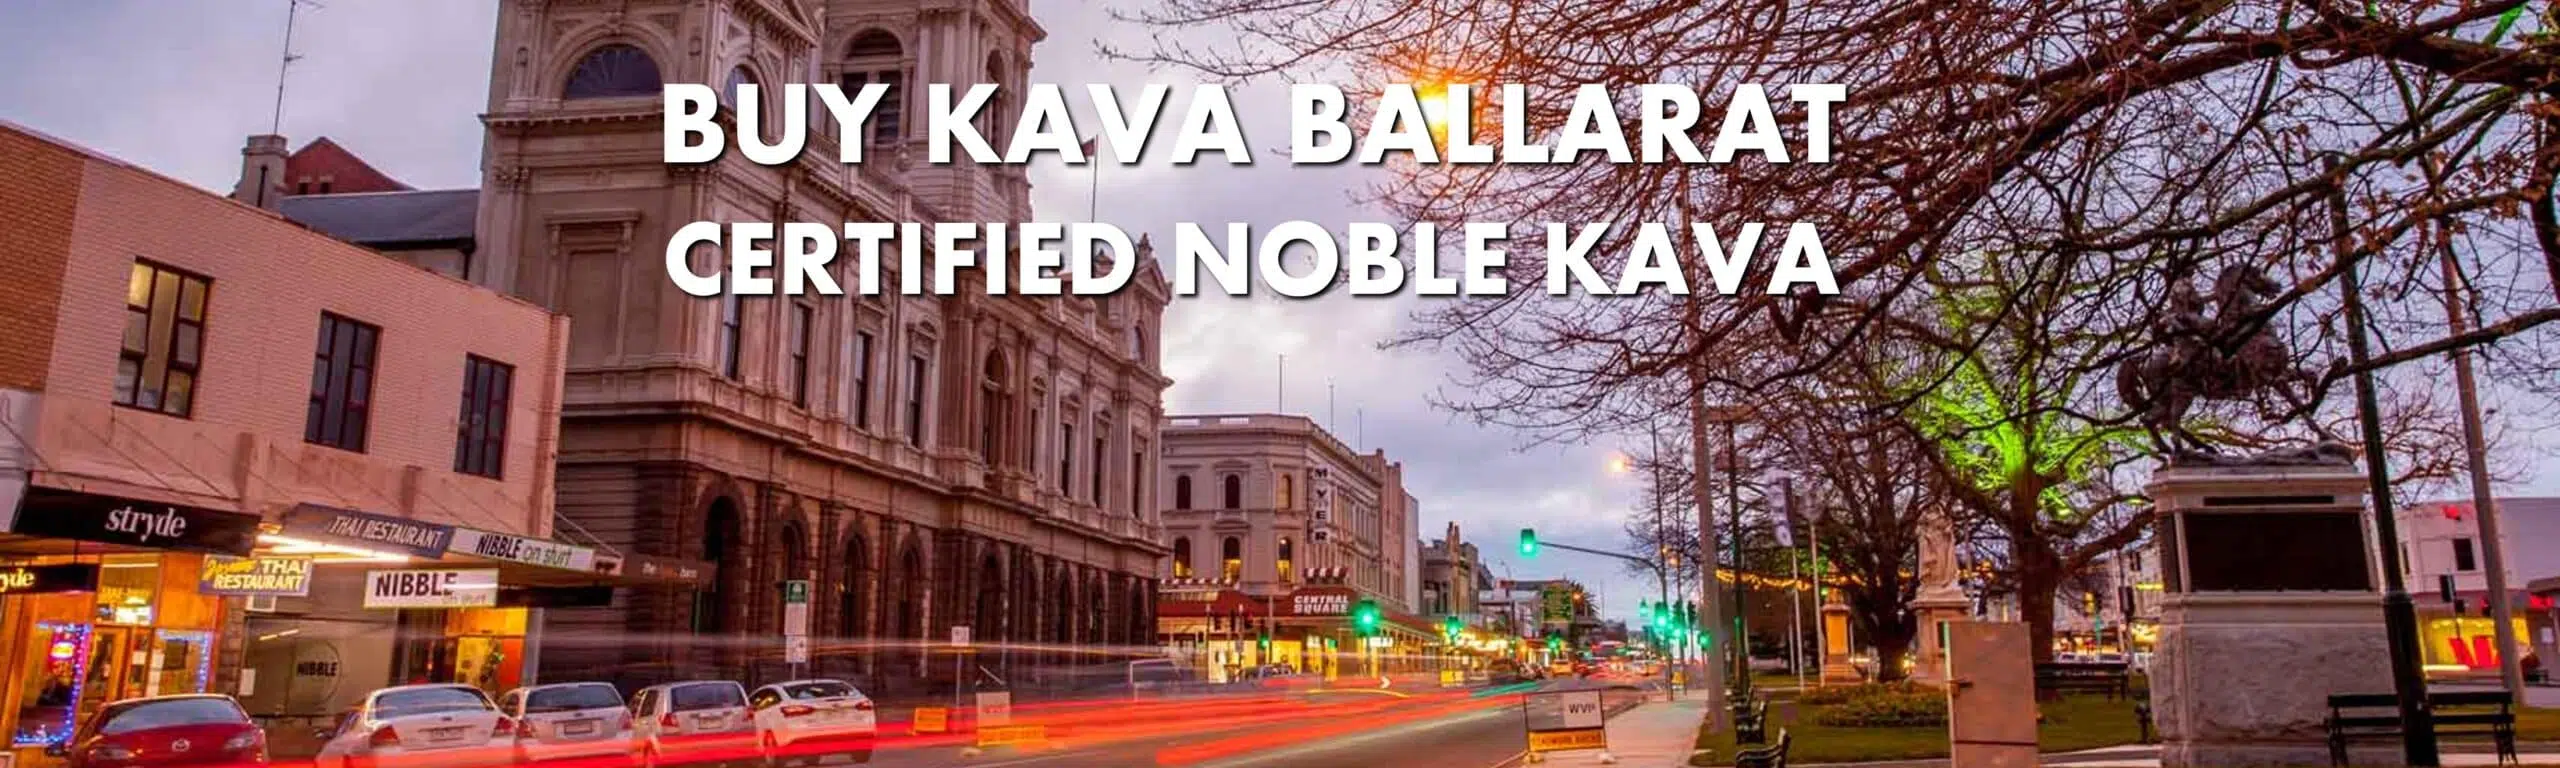 Night-time street scene in Ballarat Victoria with caption Buy Kava Ballarat Certified Noble Kava